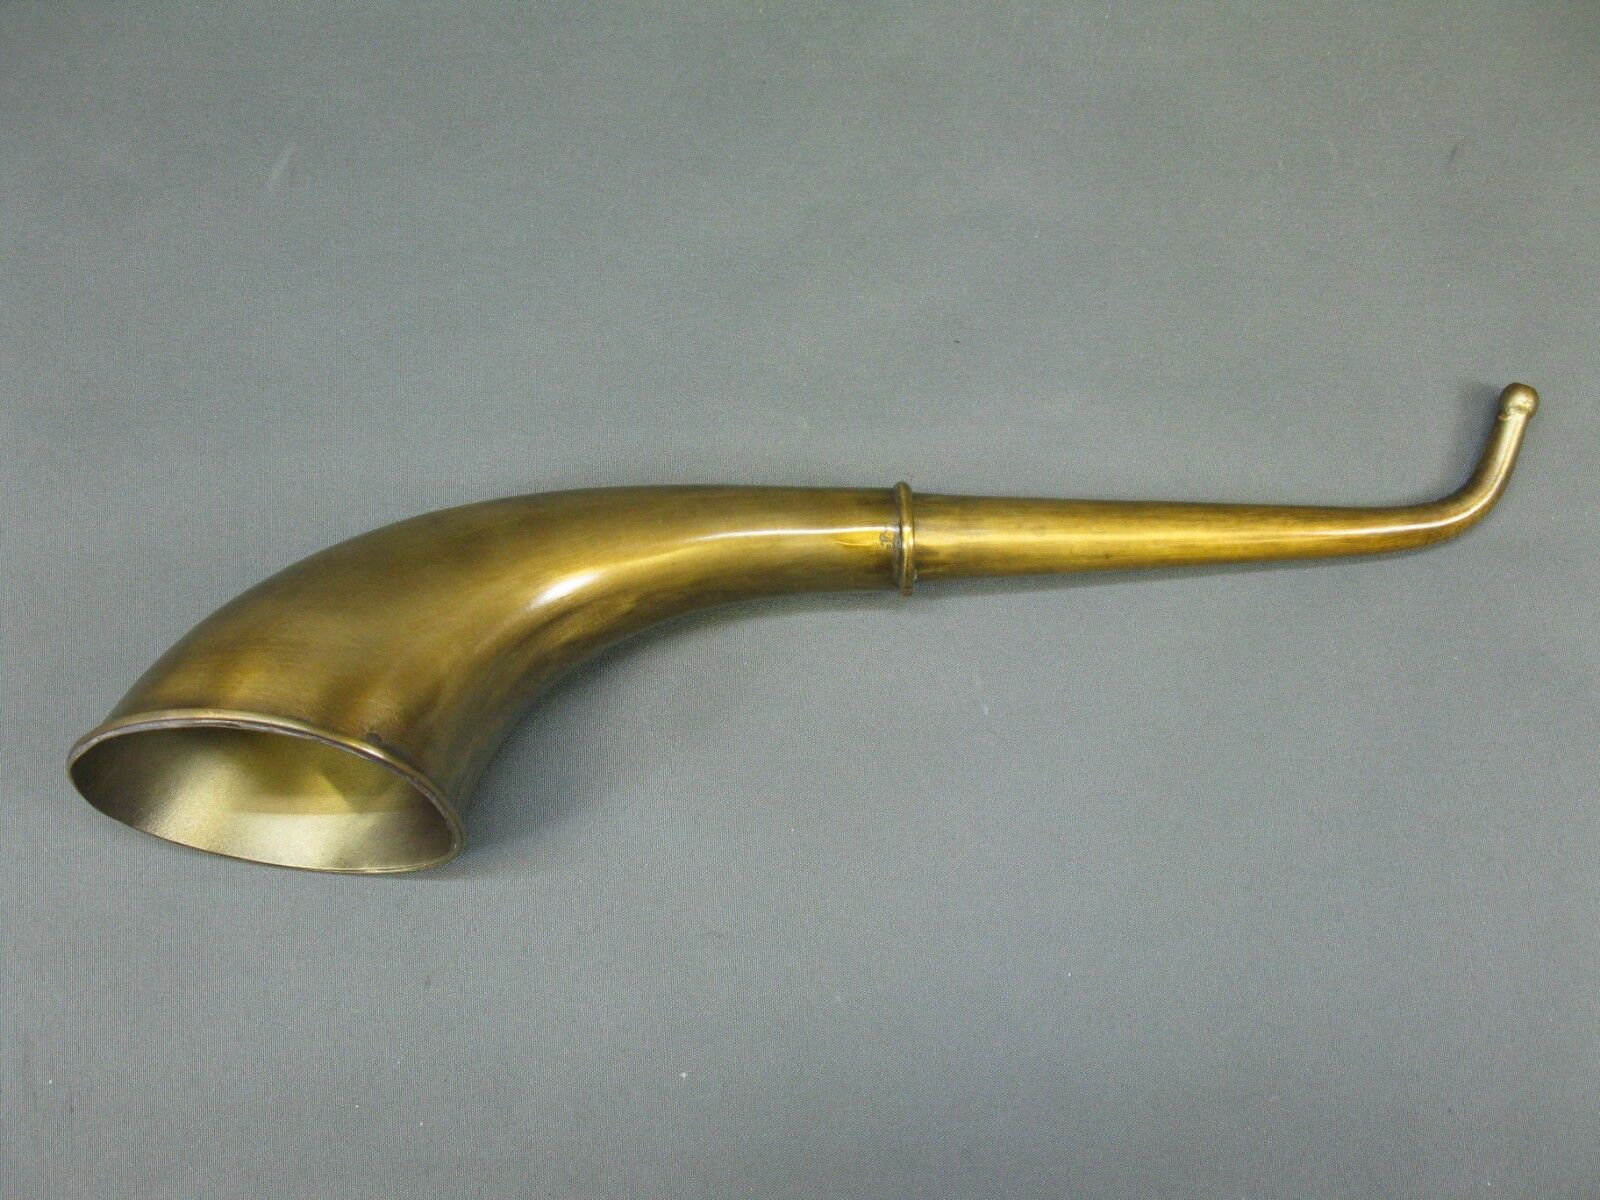 Brass Stethoscope Ear Trumpet Hearing Pipe Amplifier 14 3/16in Tube